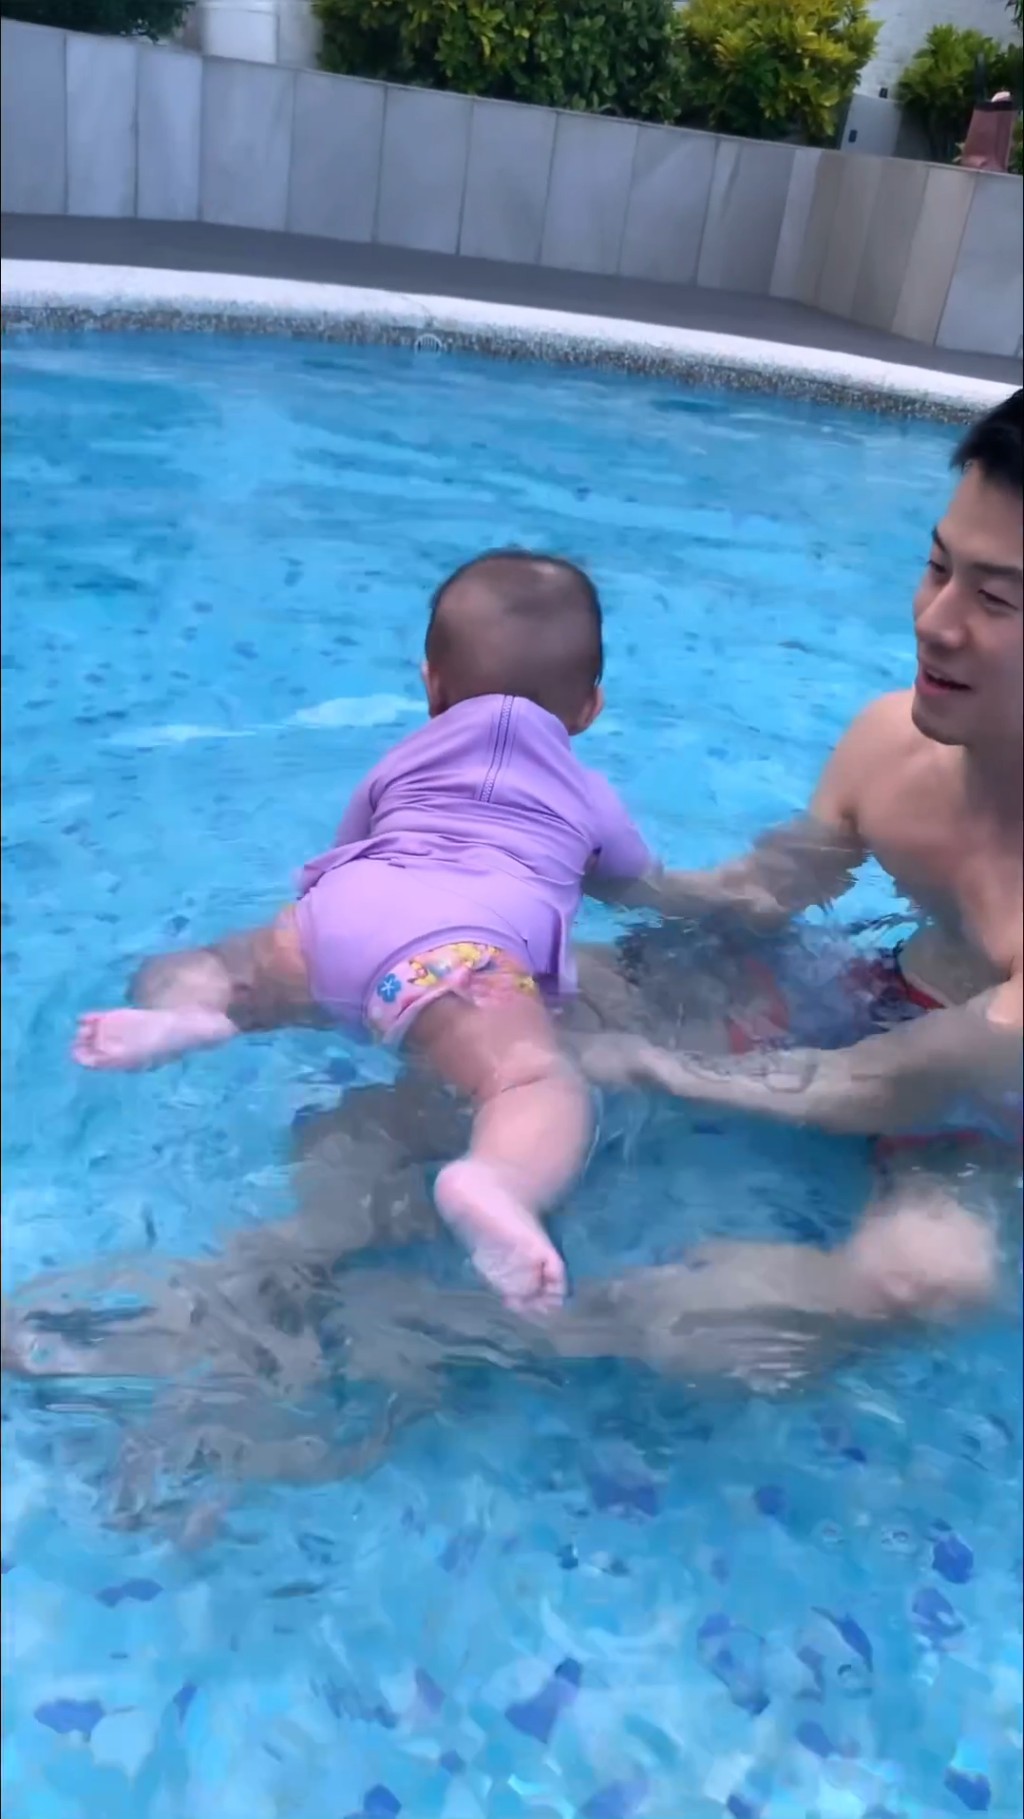 之后陈宇琛将女儿抱在手中，让她浮在水面。